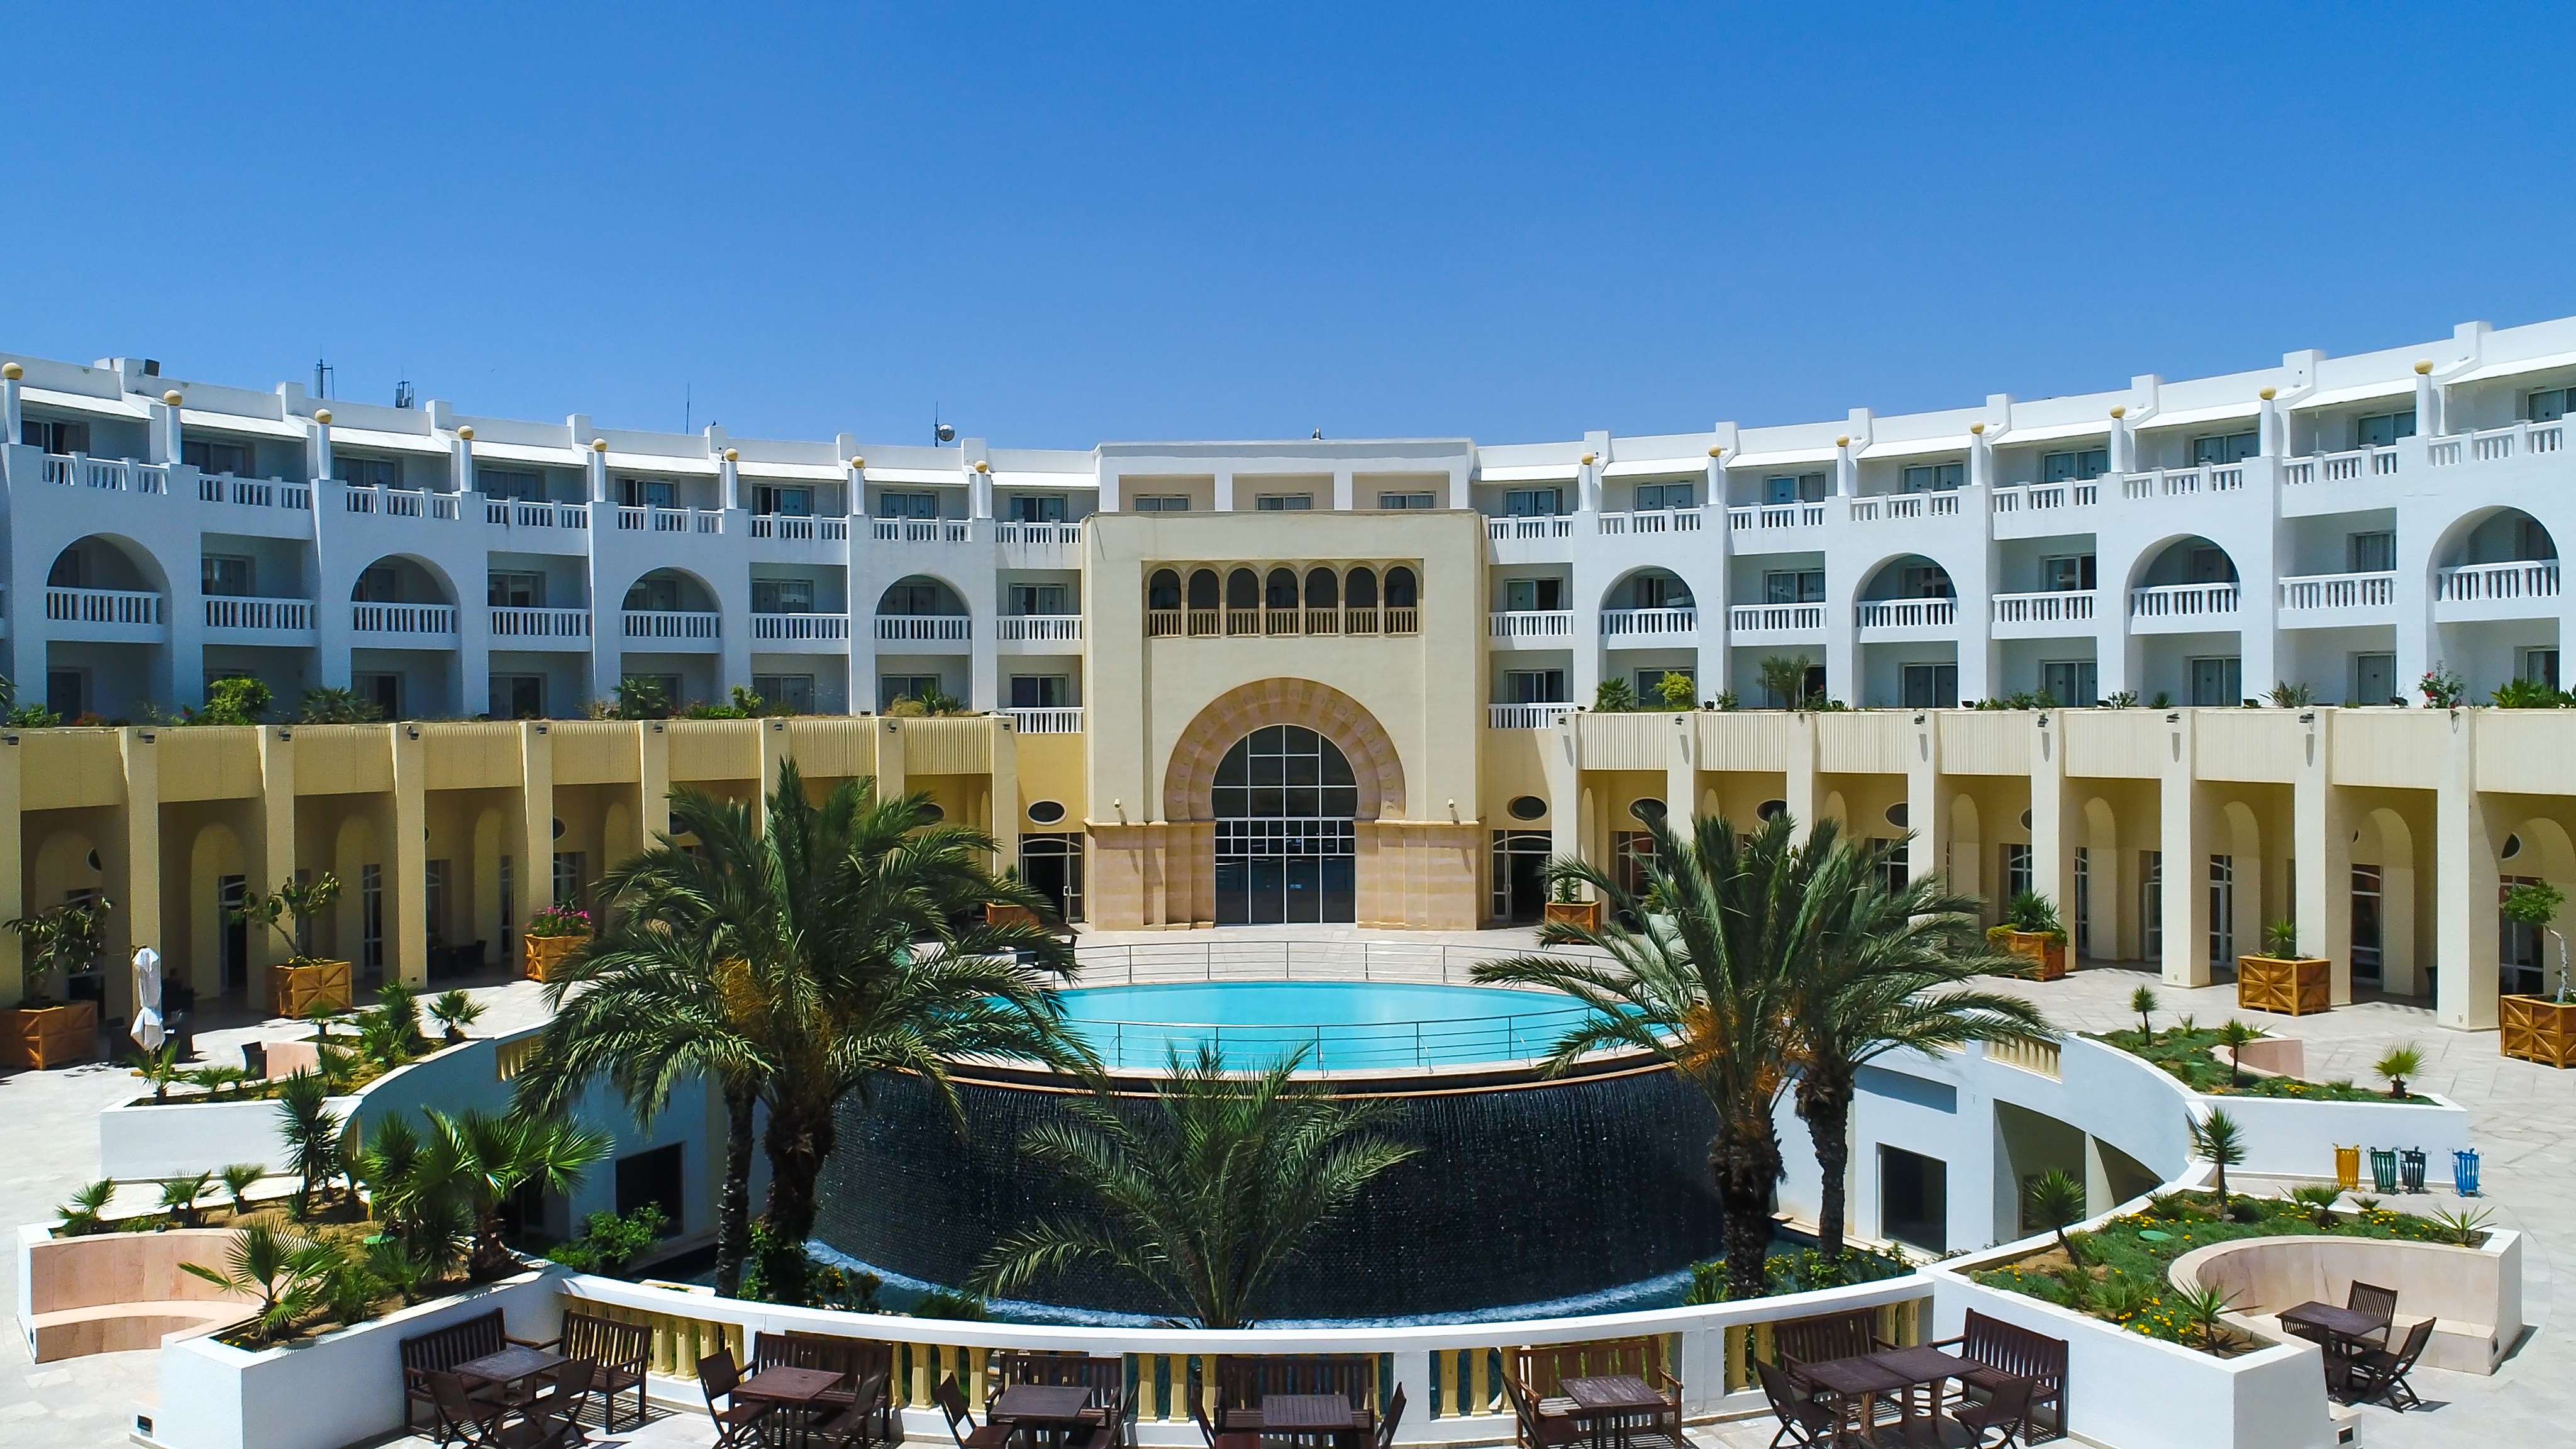 Dernière minute Tunisie Hammamet Hôtel Medina Solaria et Thalasso 5*- cure thalasso incluse